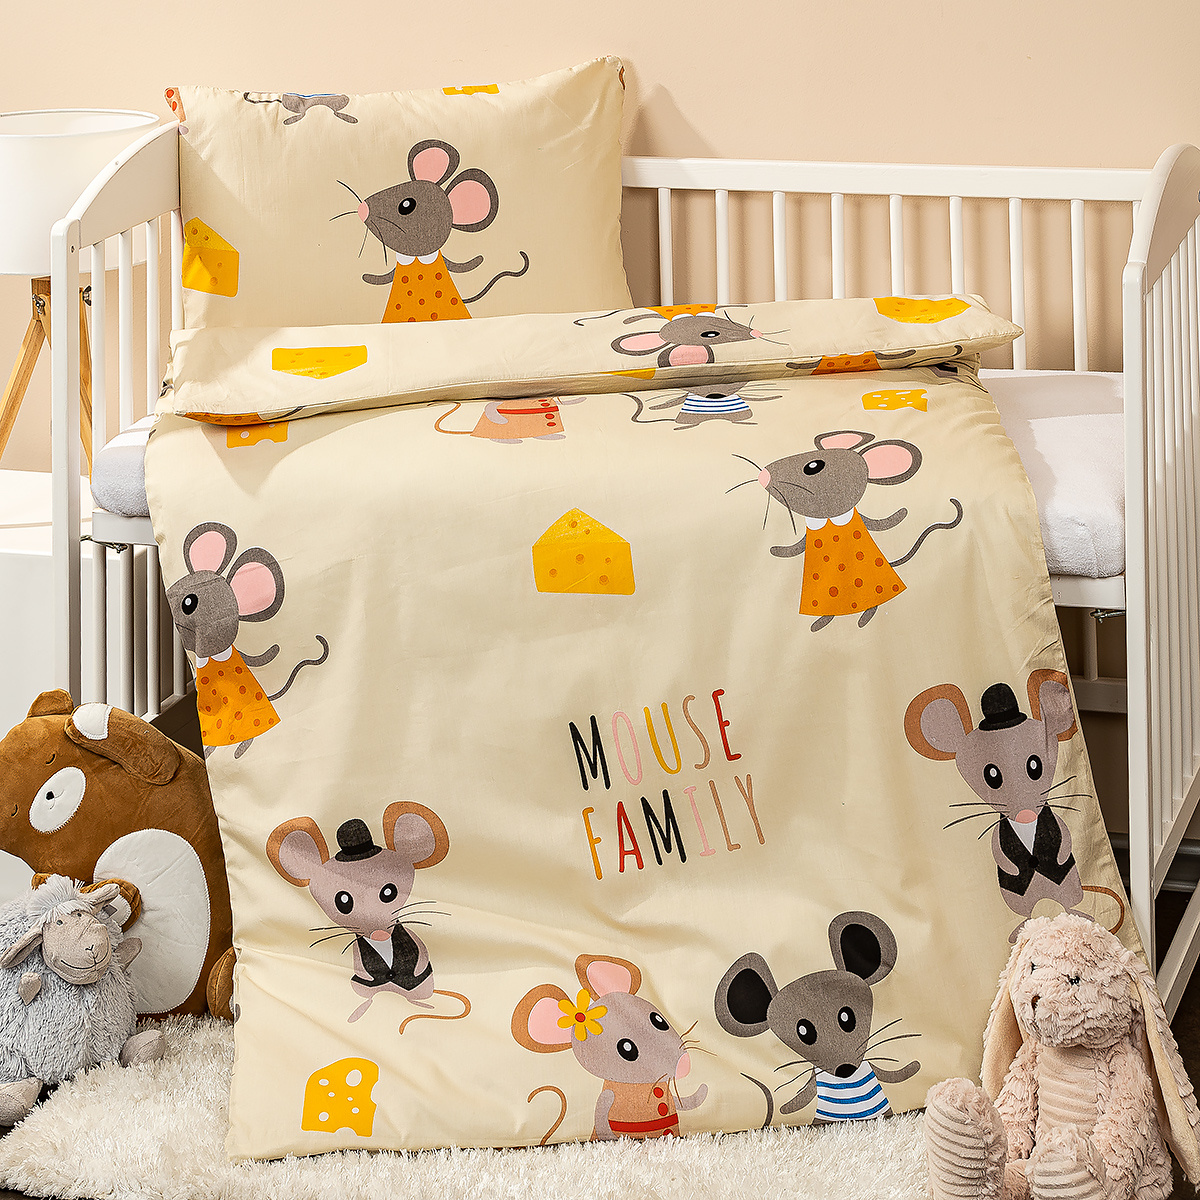 4home Detské bavlnené obliečky do postieľky Little mouse, oranžová, 100 x 135 cm, 40 x 60 cm